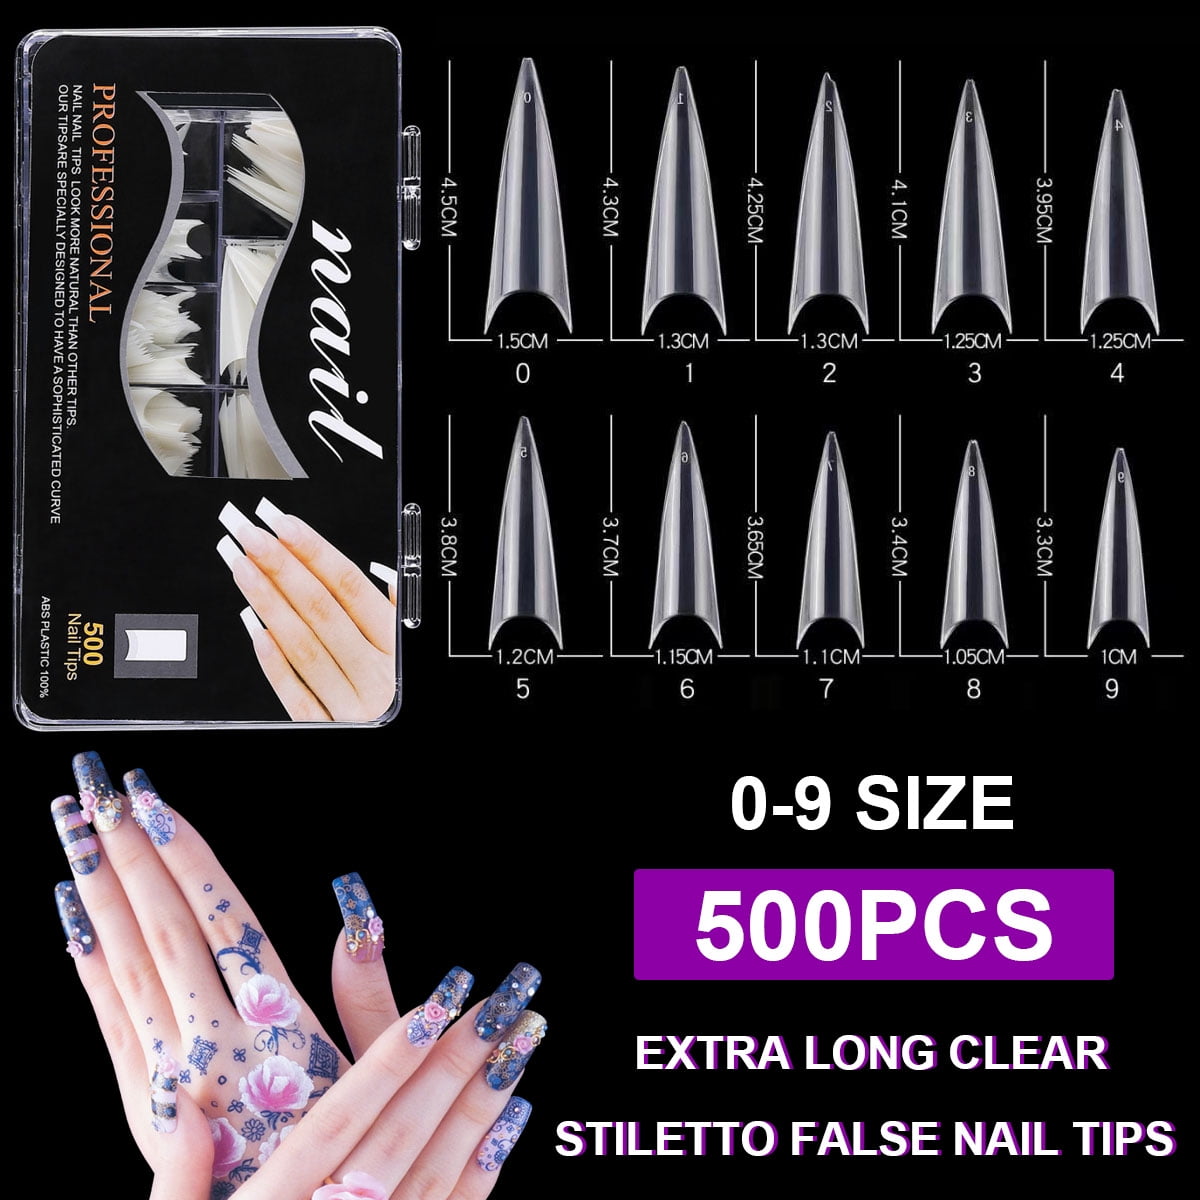 100pcs 500pcsclear Nail Tips Coffin Fake Nails Including Half Cover Natural Acrylic Nails False Nails With Plastic Box For Diy Nail Art Walmart Com Walmart Com